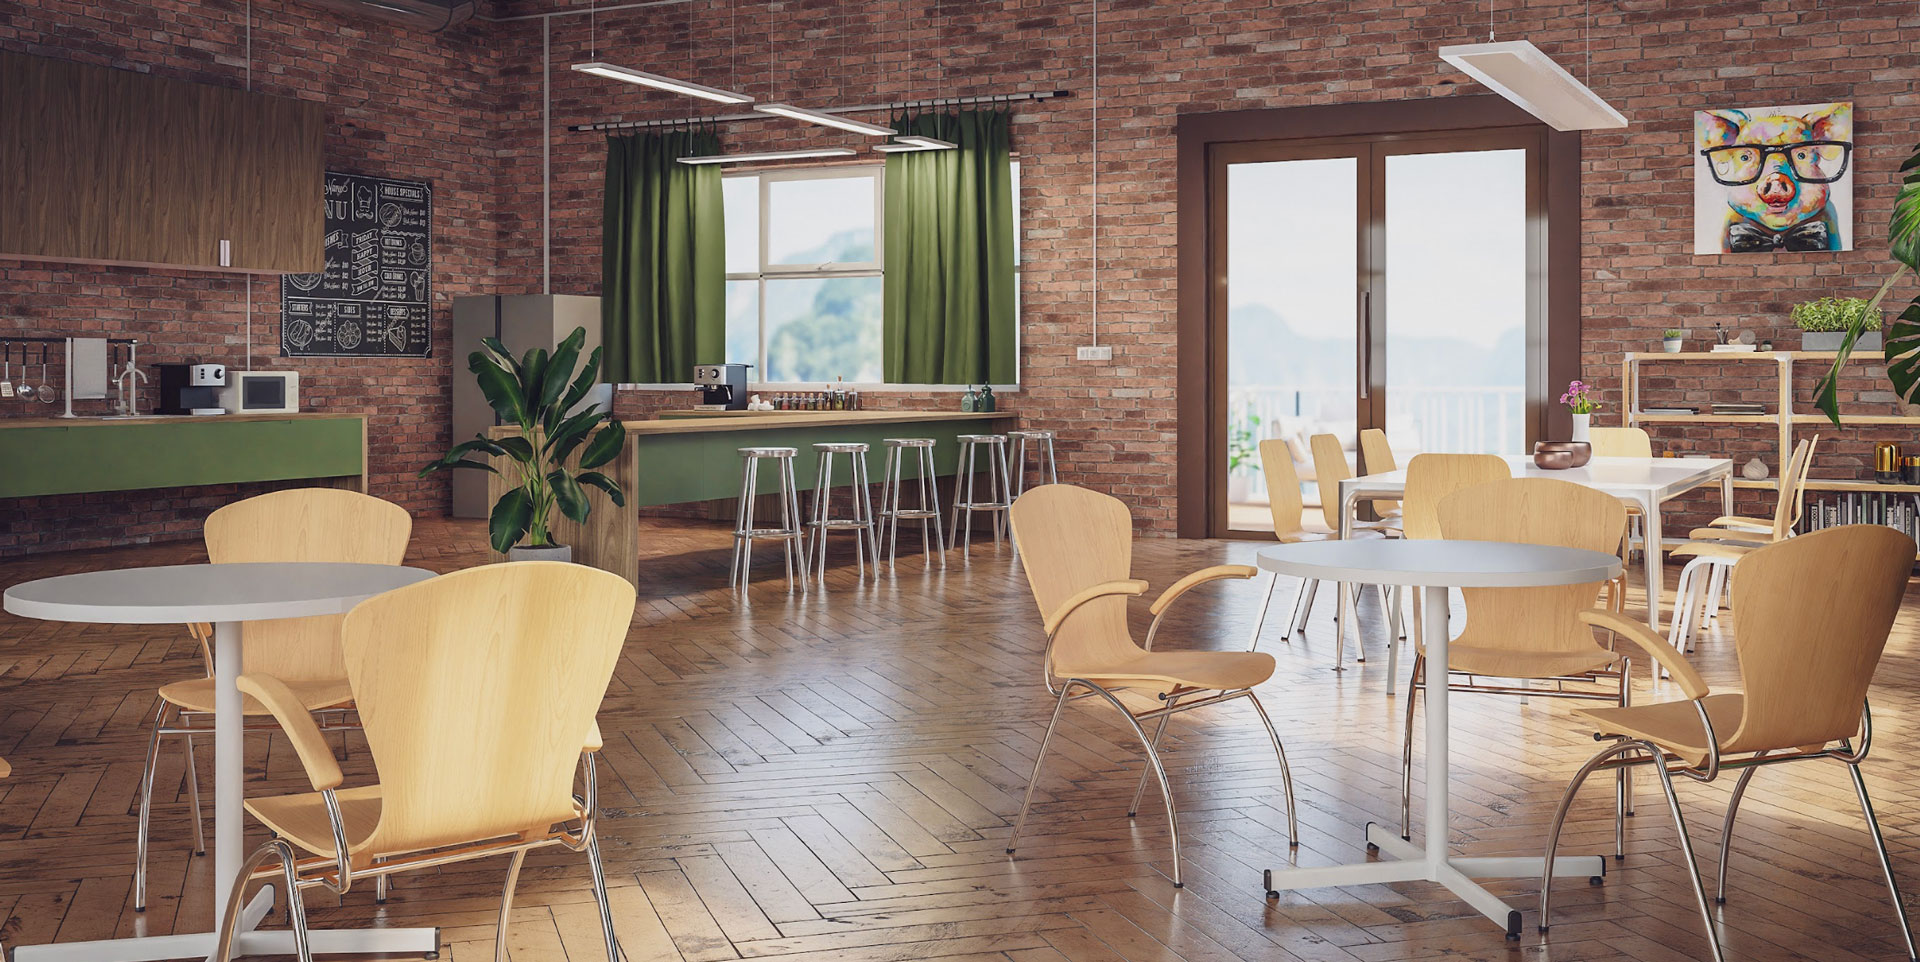 Ein modern gestalteter Pausenraum mit Ziegelwand, Holzboden und einer Mischung aus runden und eckigen Tischen.